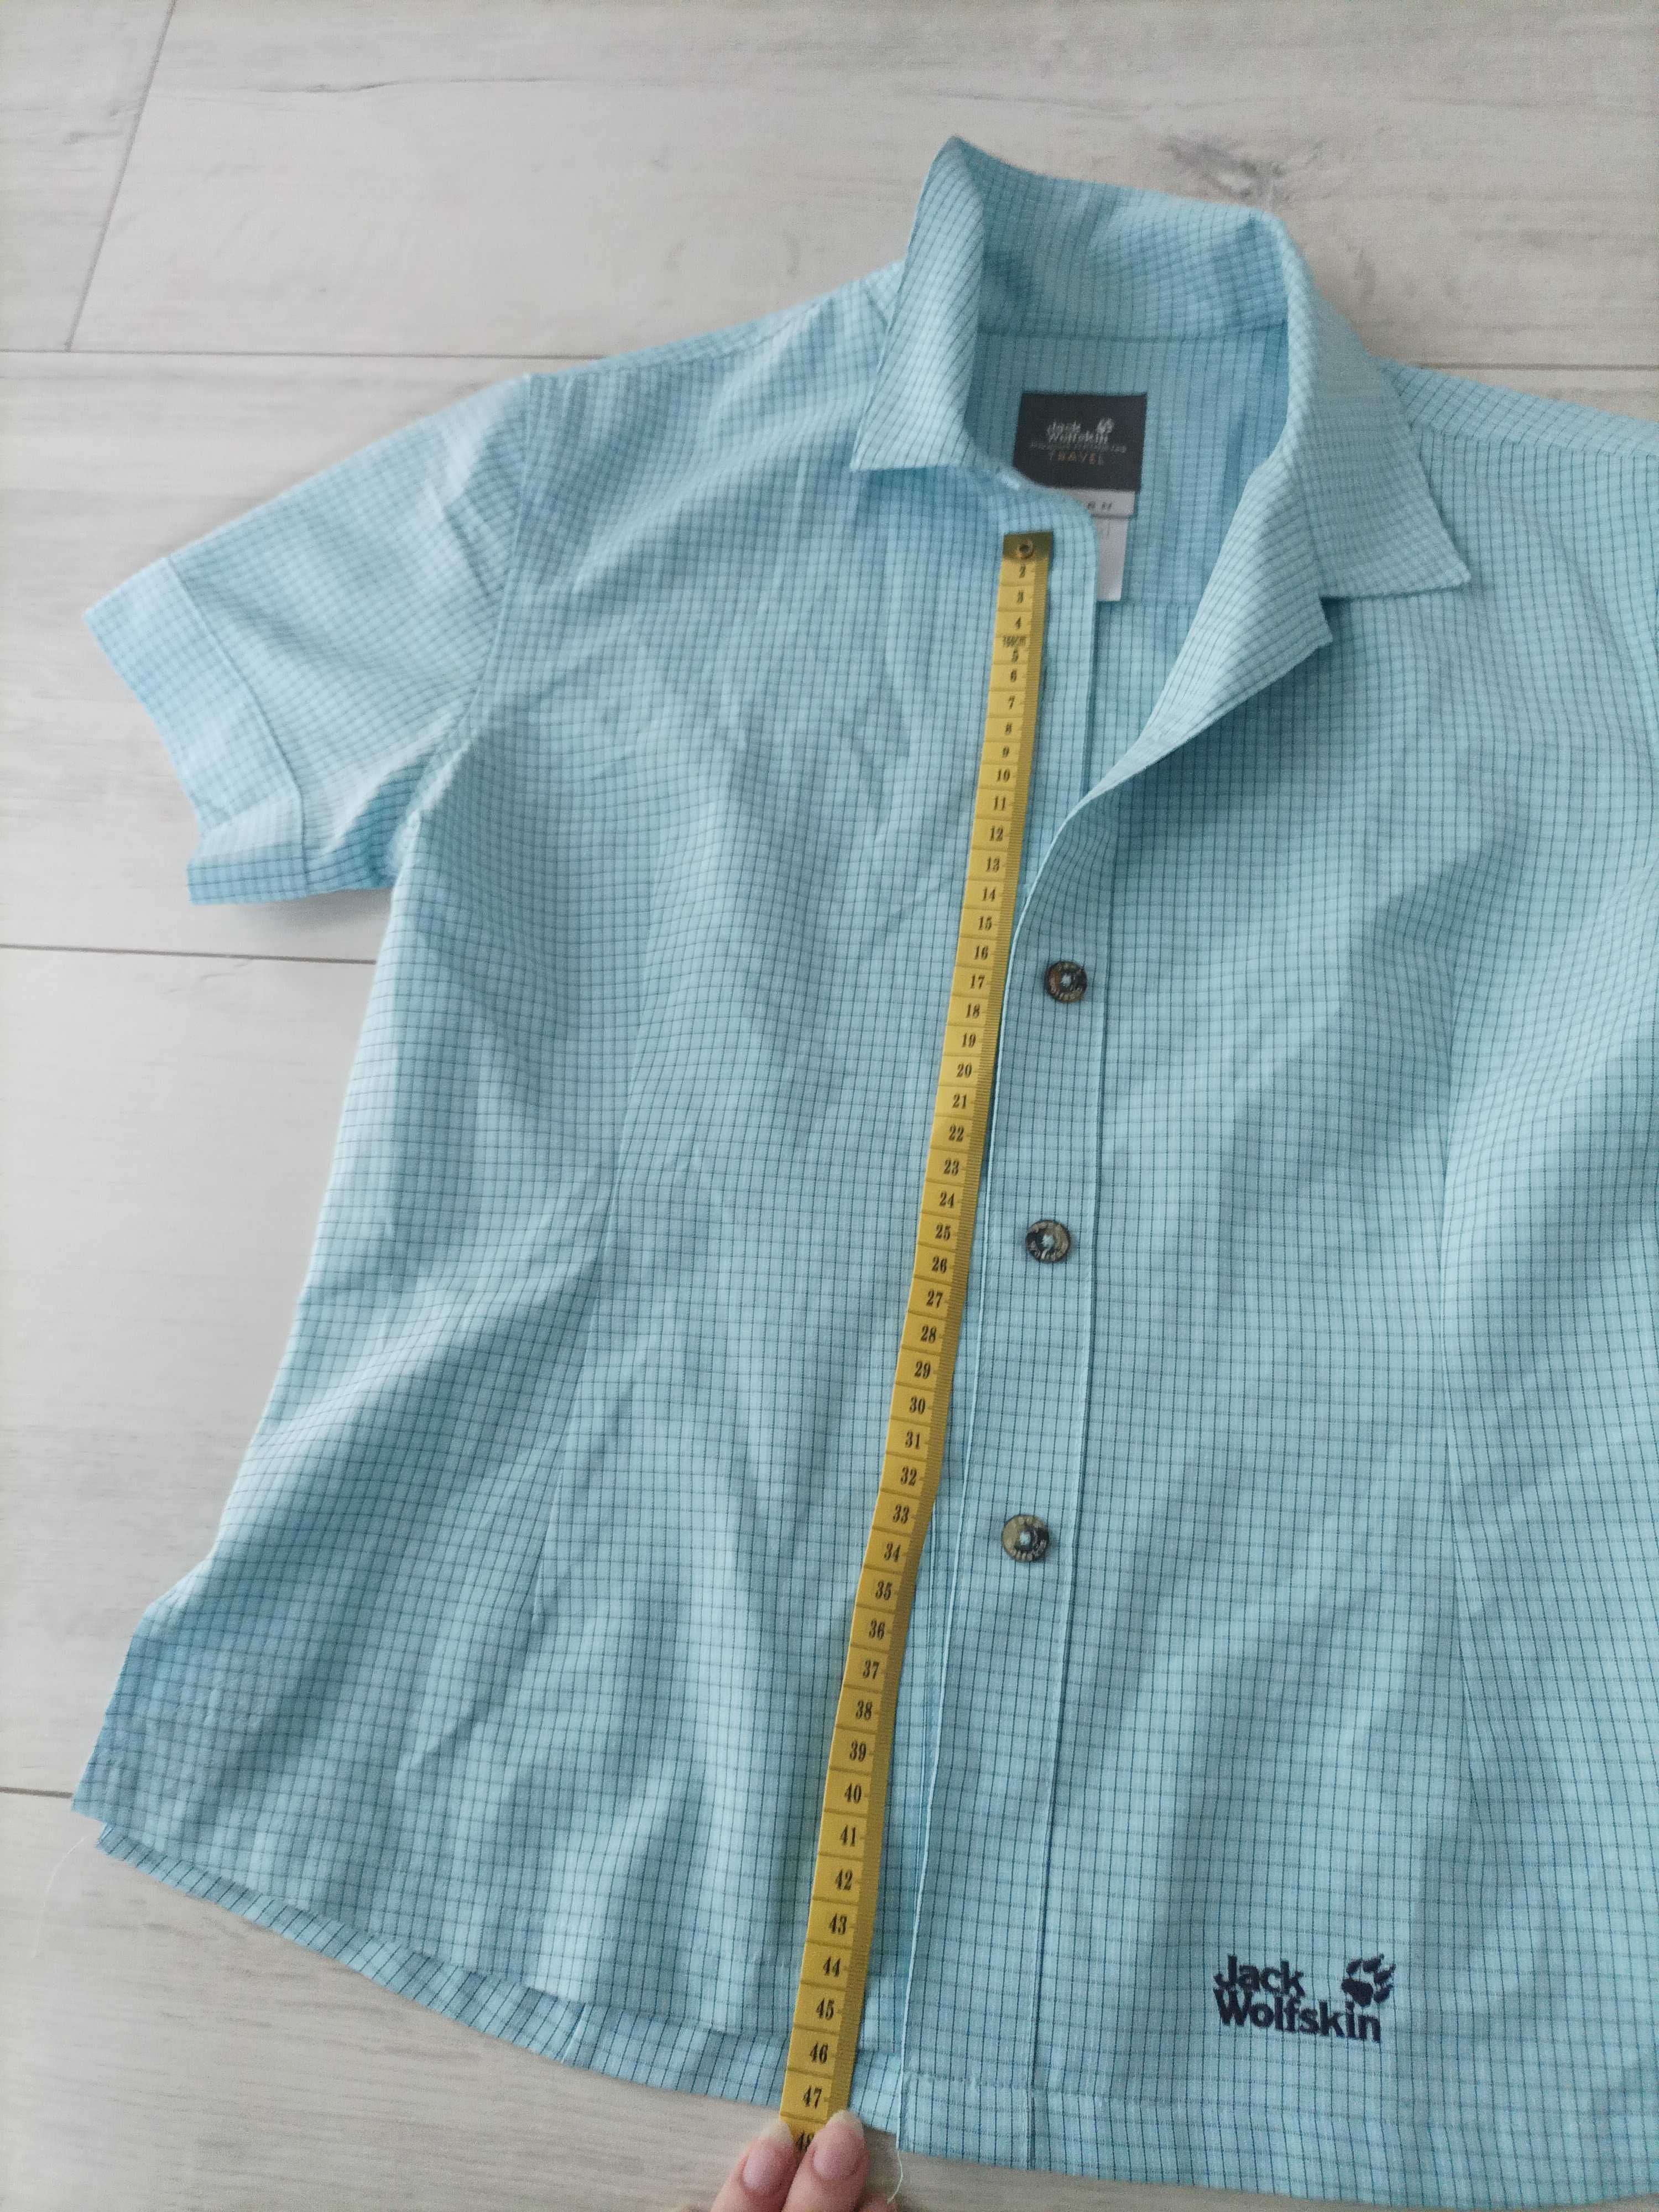 Jack wolfskin travel damska niebieska koszula bluzka oryginalna